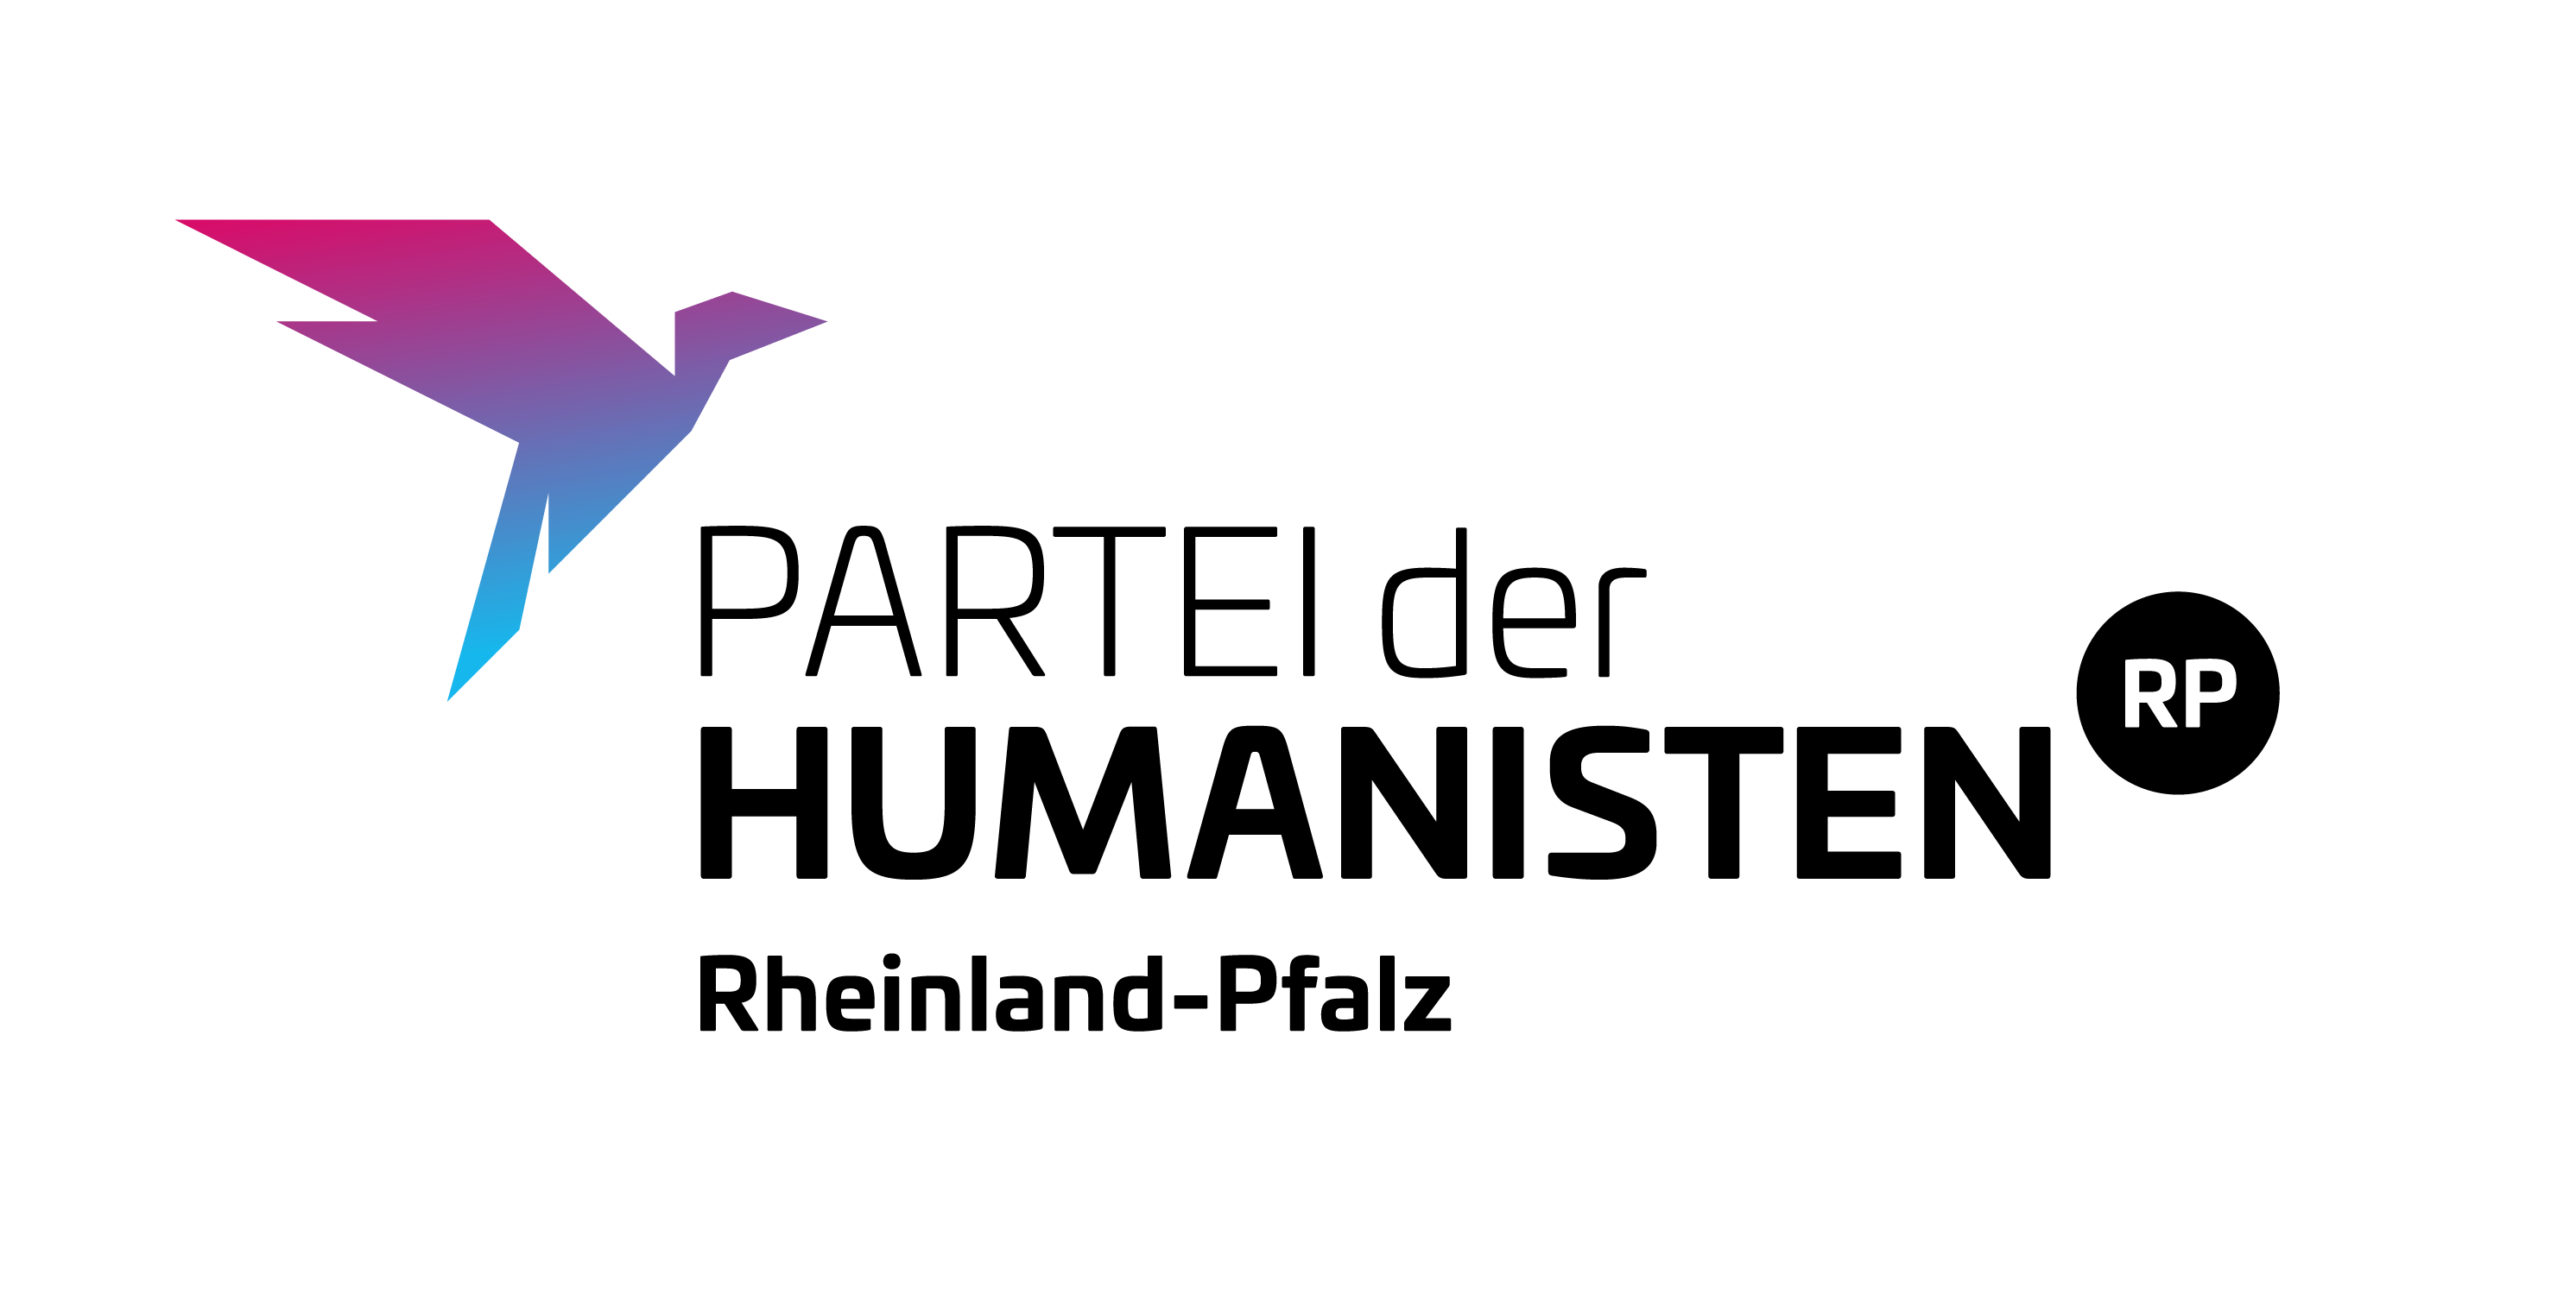 Humanisten Partei